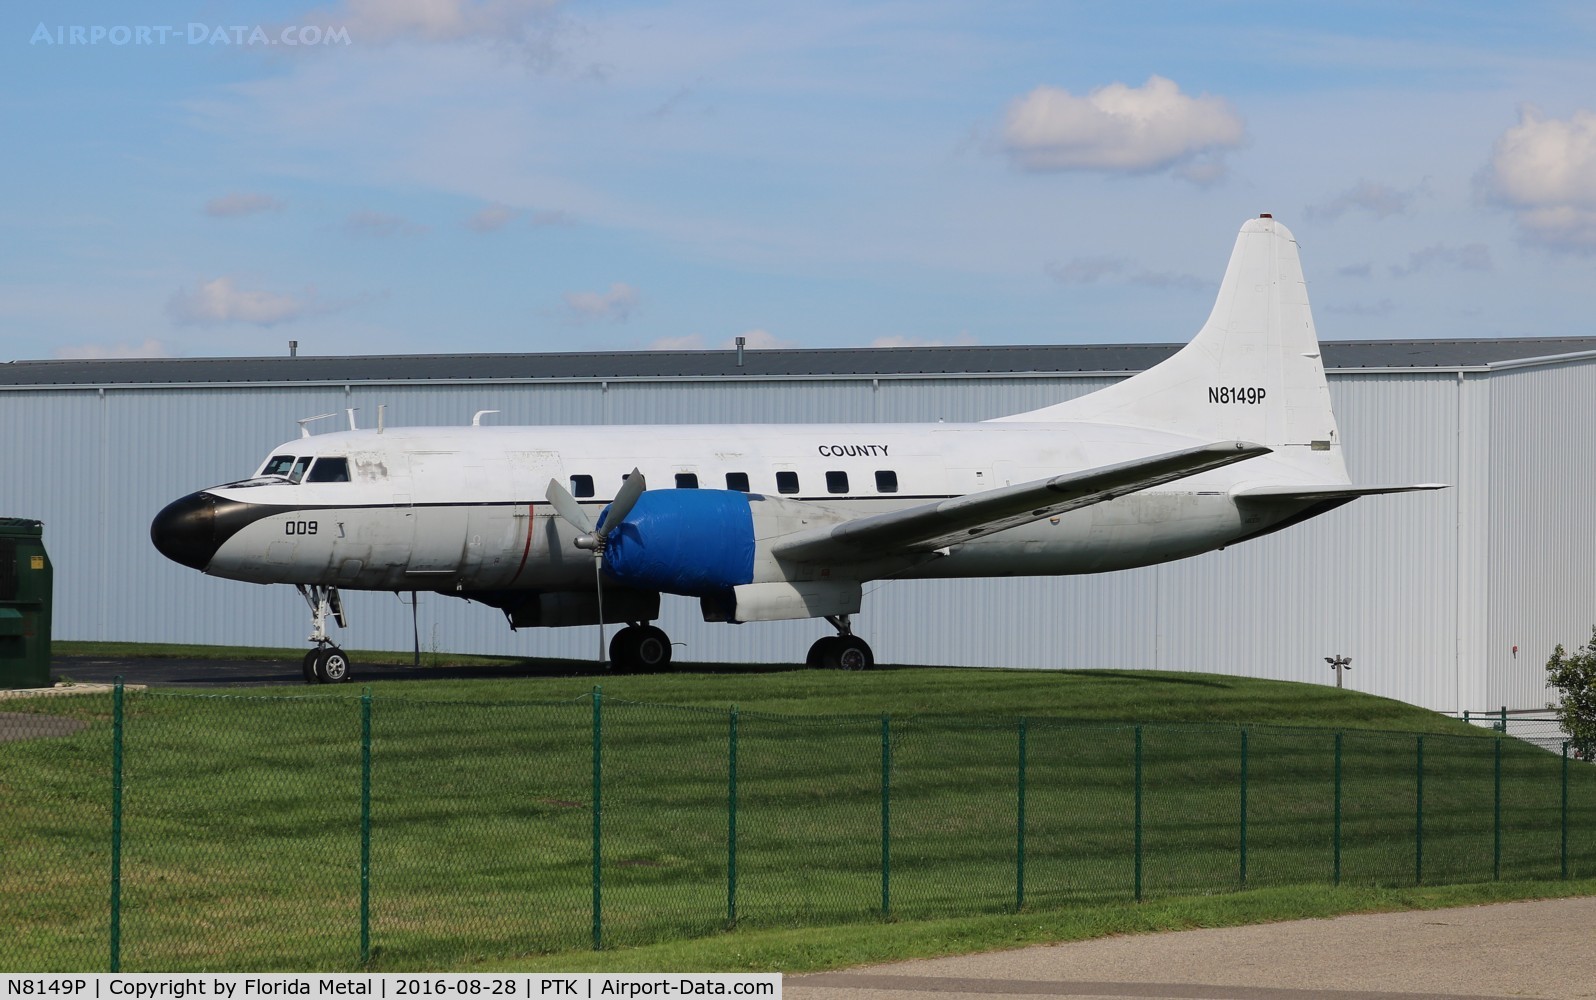 N8149P, Convair C-131F (R4Y-1) Samaritan C/N 292, C-131F